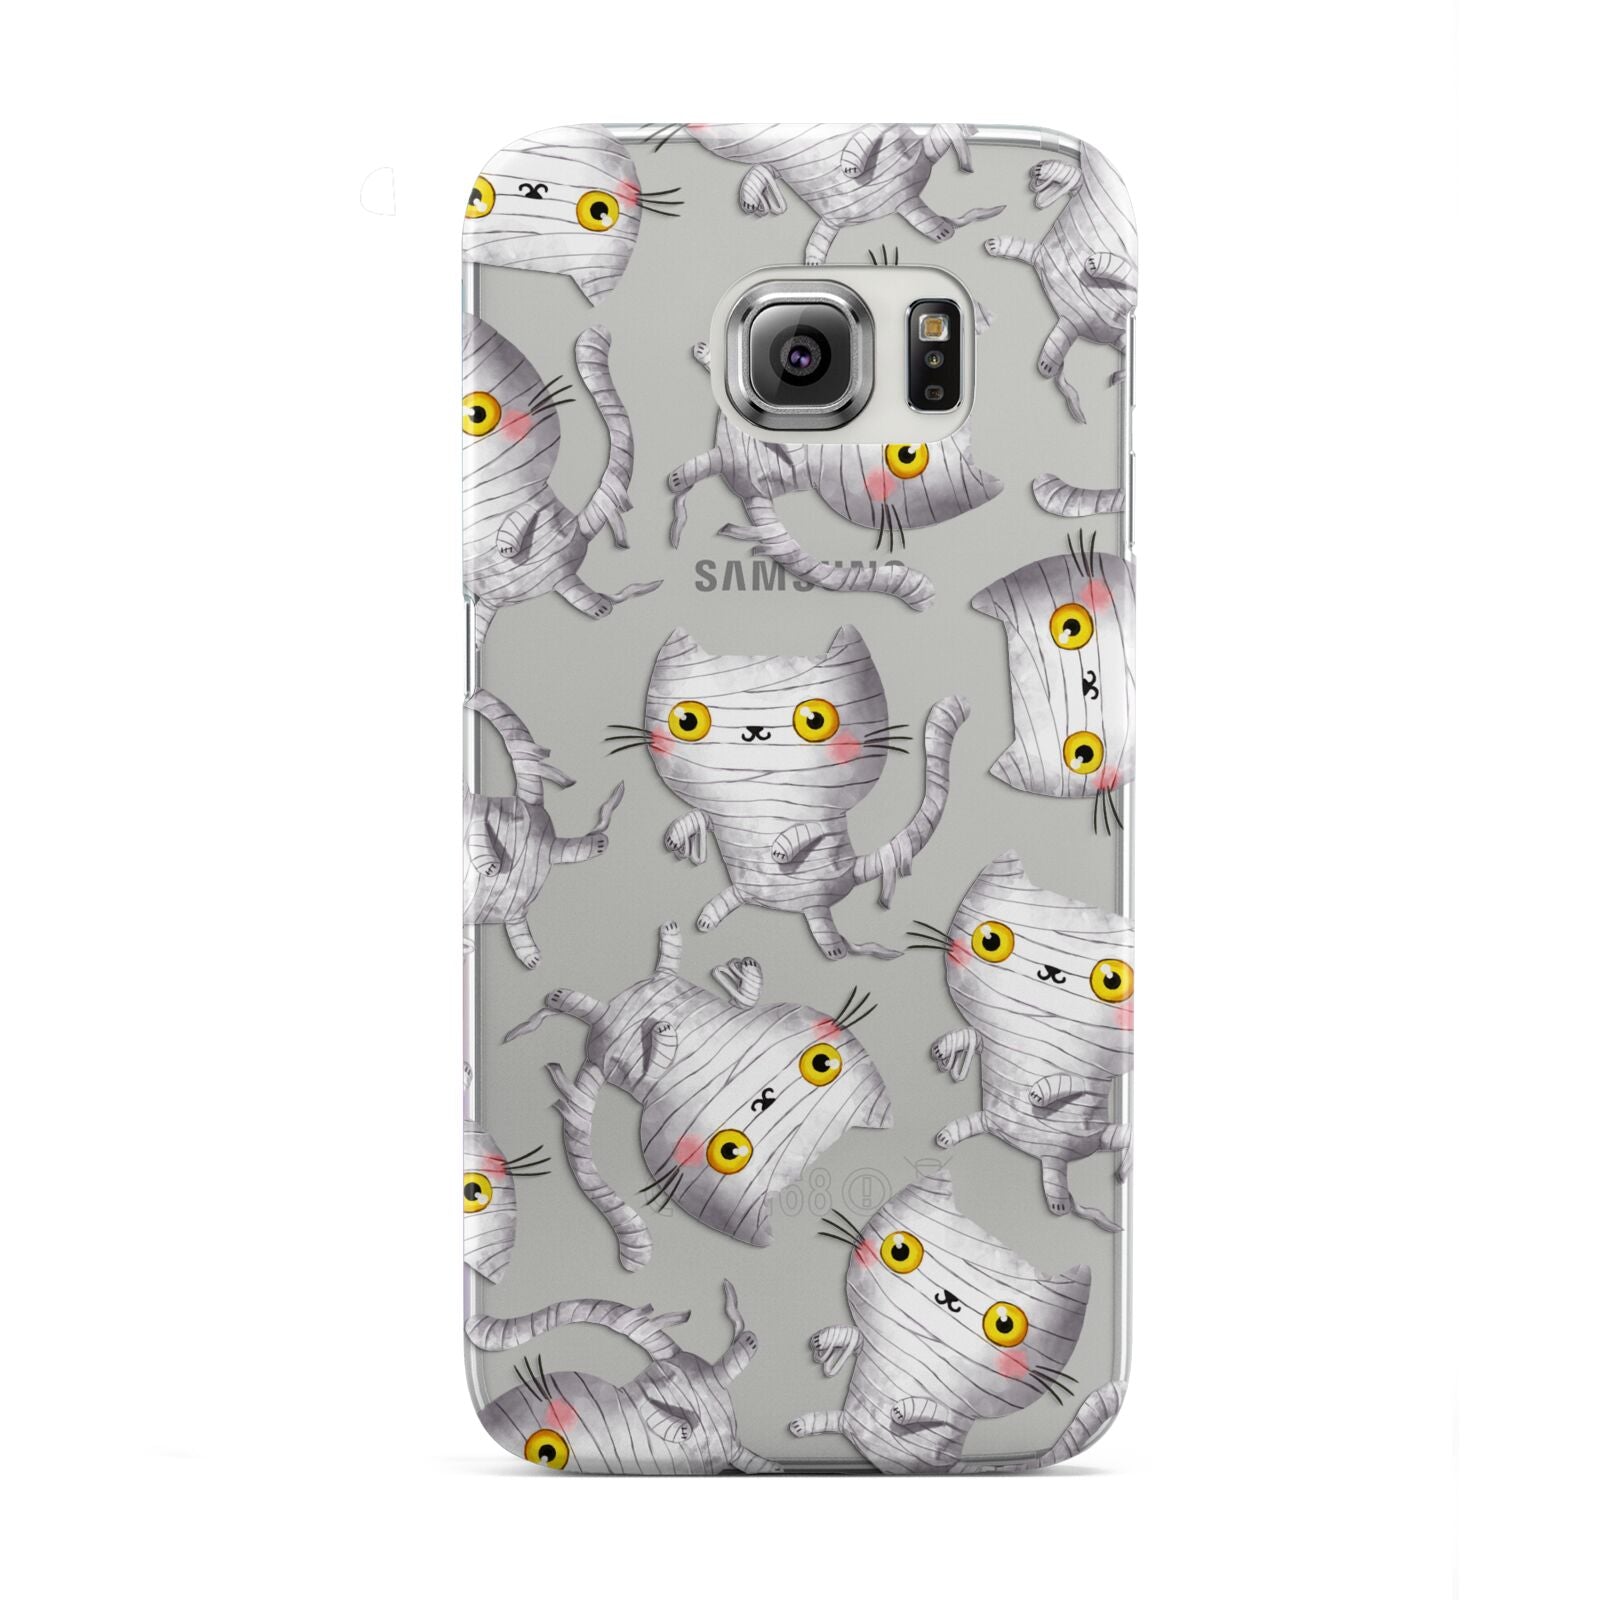 Mummy Cats Samsung Galaxy S6 Edge Case